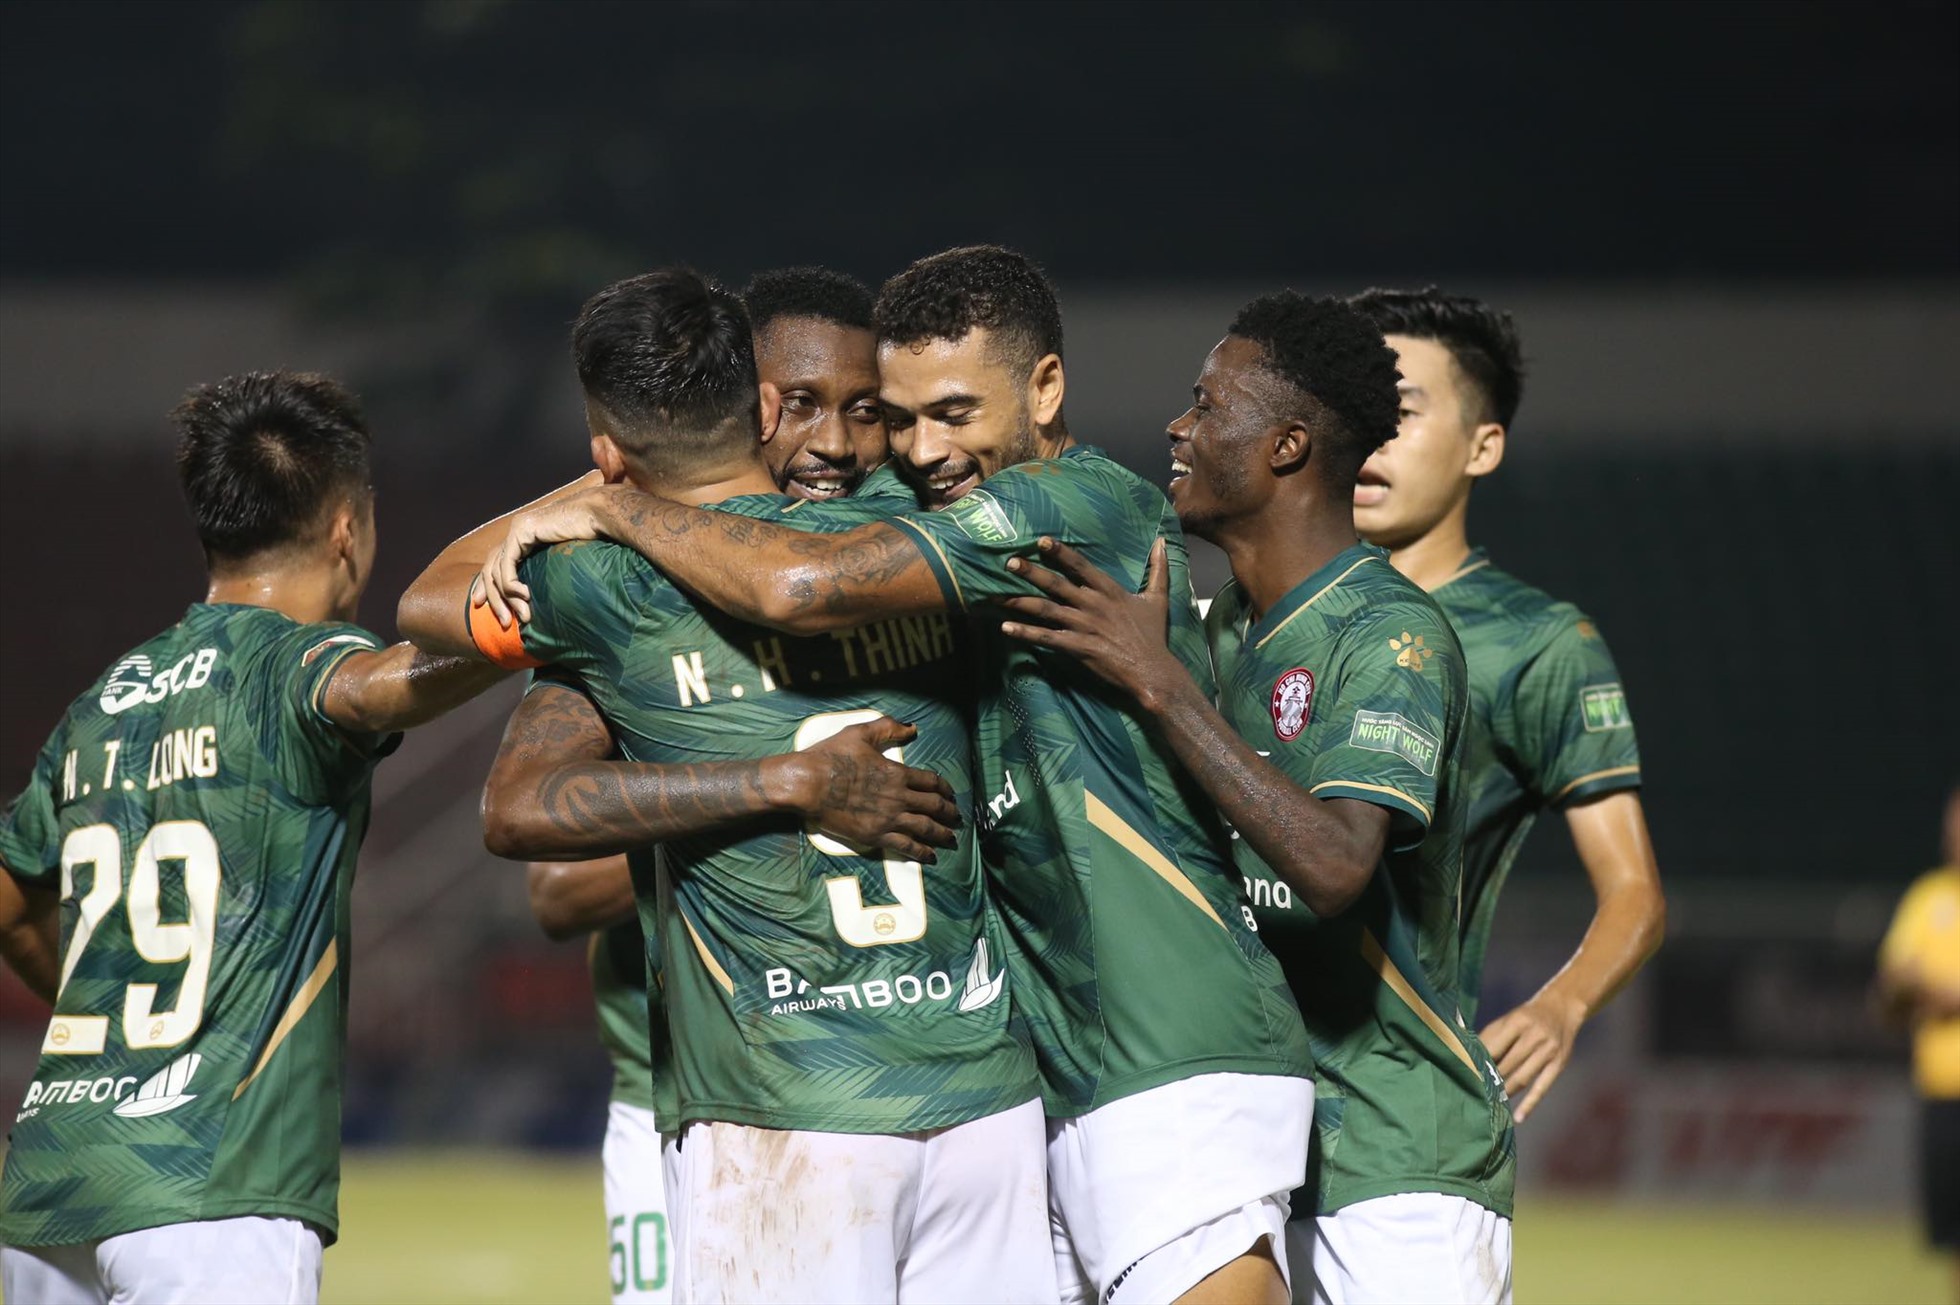 CLB TPHCM nhận thưởng 1 tỉ đồng sau trận thắng Sài Gòn FC